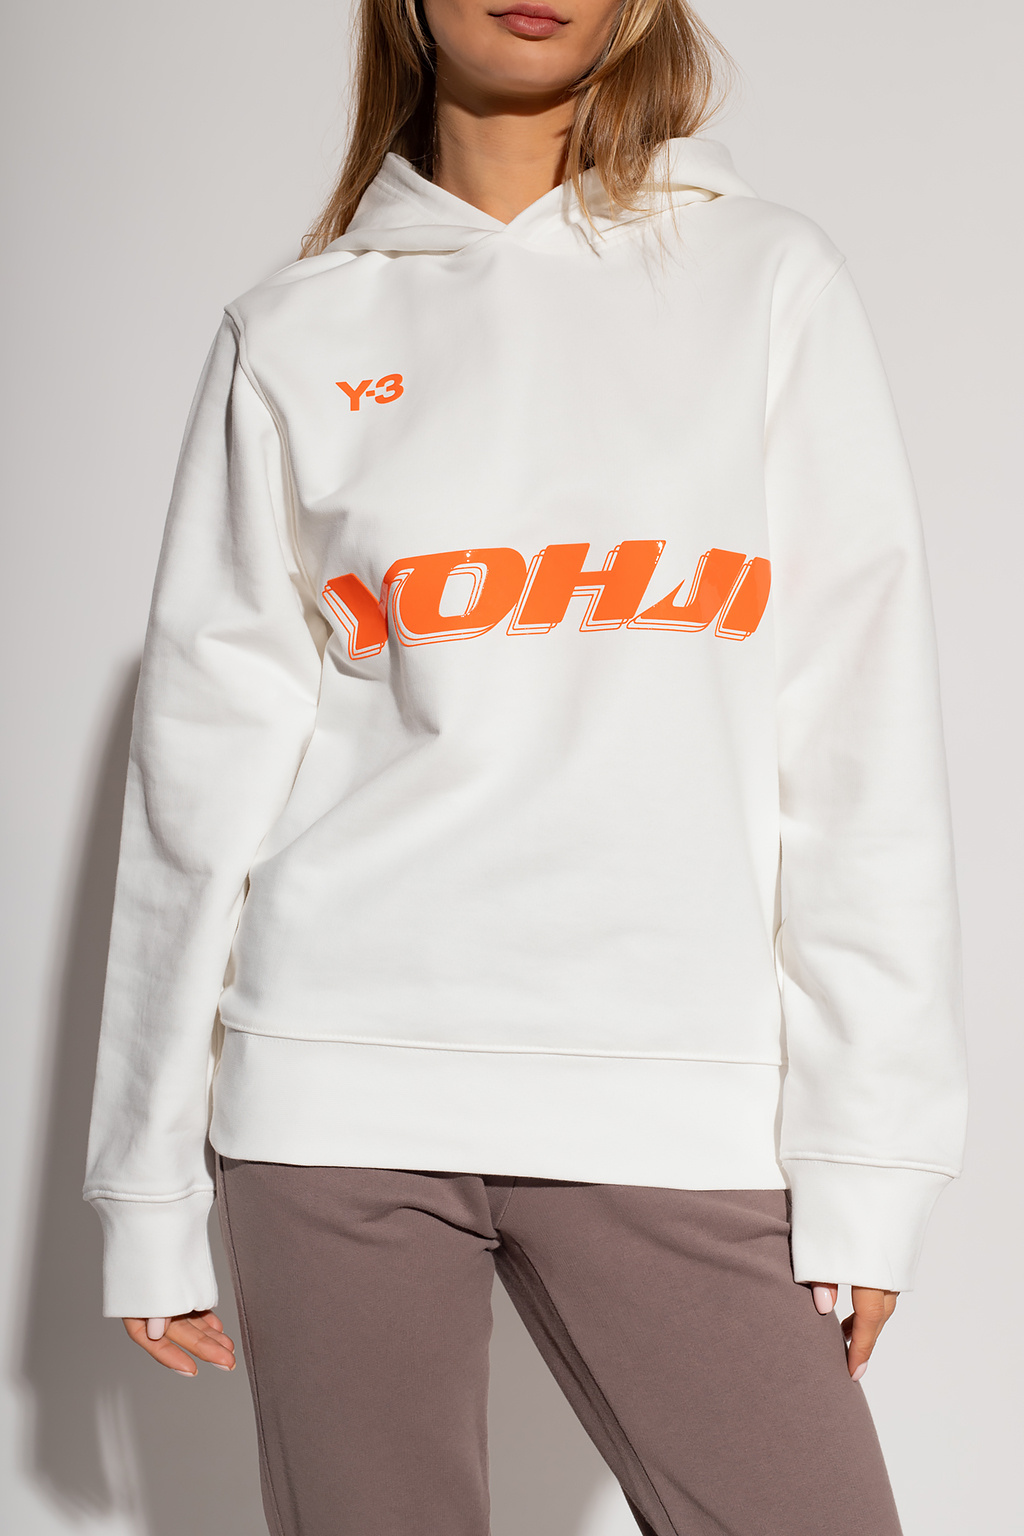 Y-3 Yohji Yamamoto Logo-printed gym sweatshirt